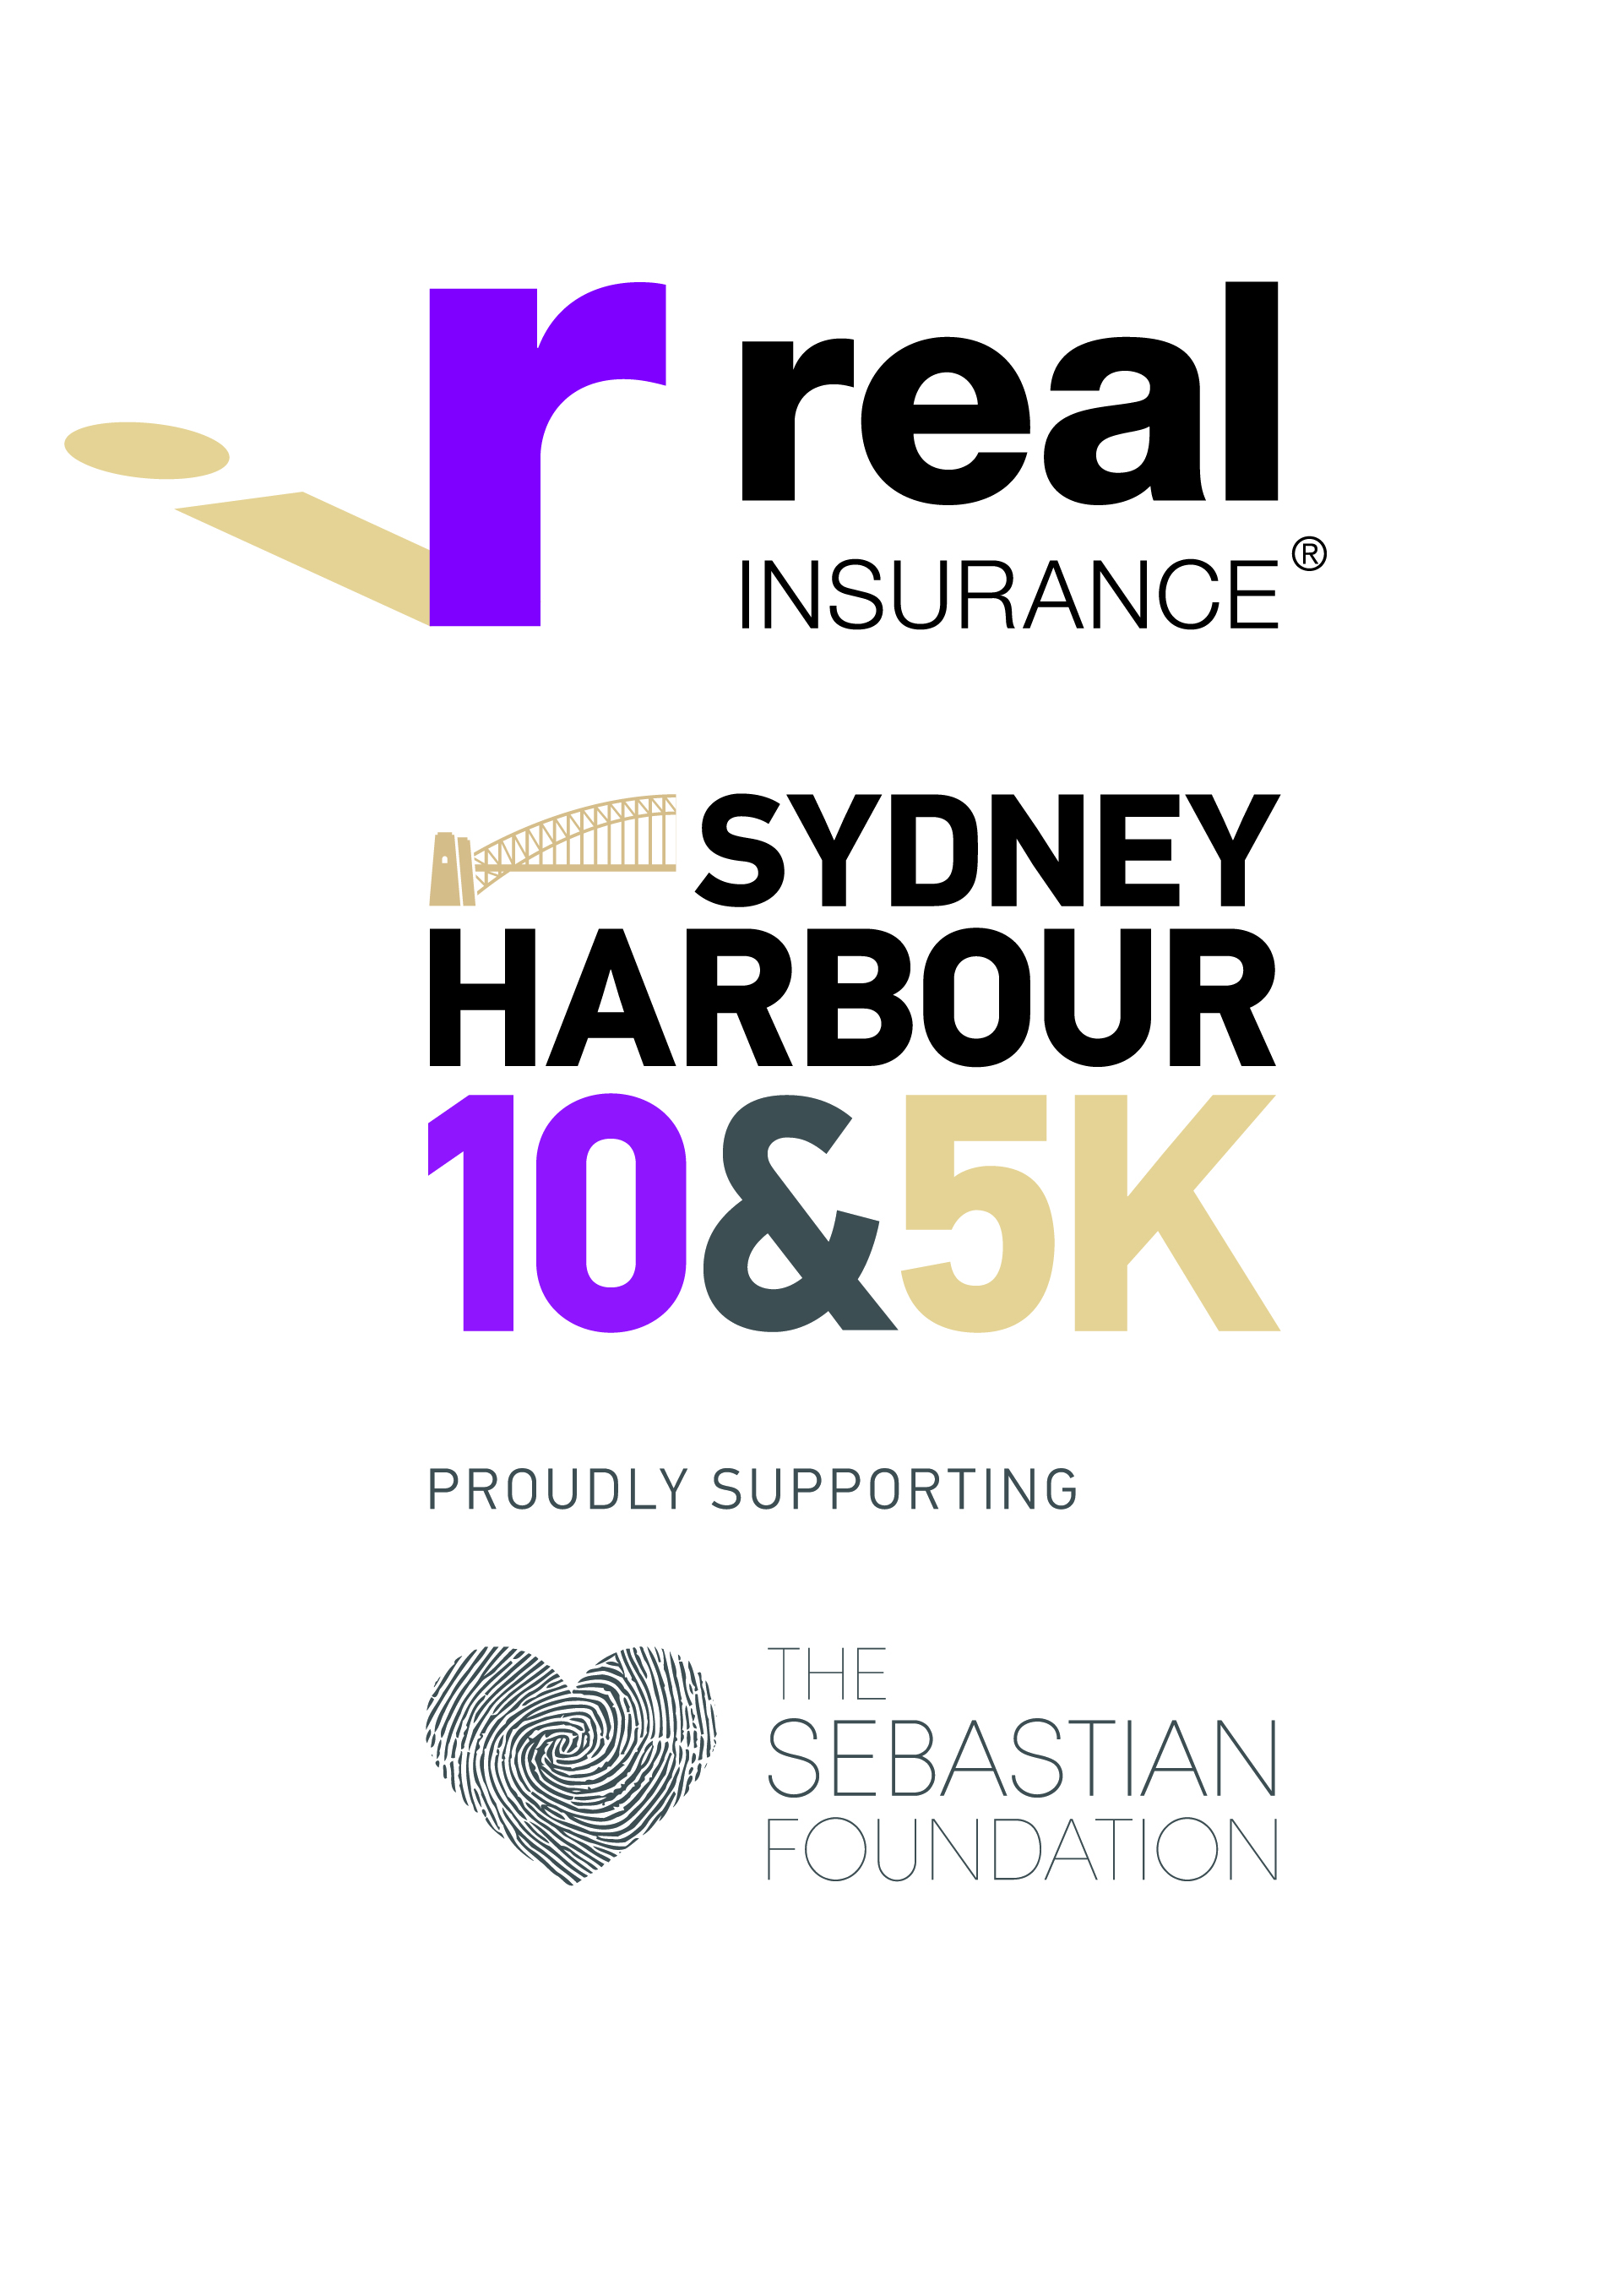 Real Insurance Sydney Harbour 10k & 5k Logo